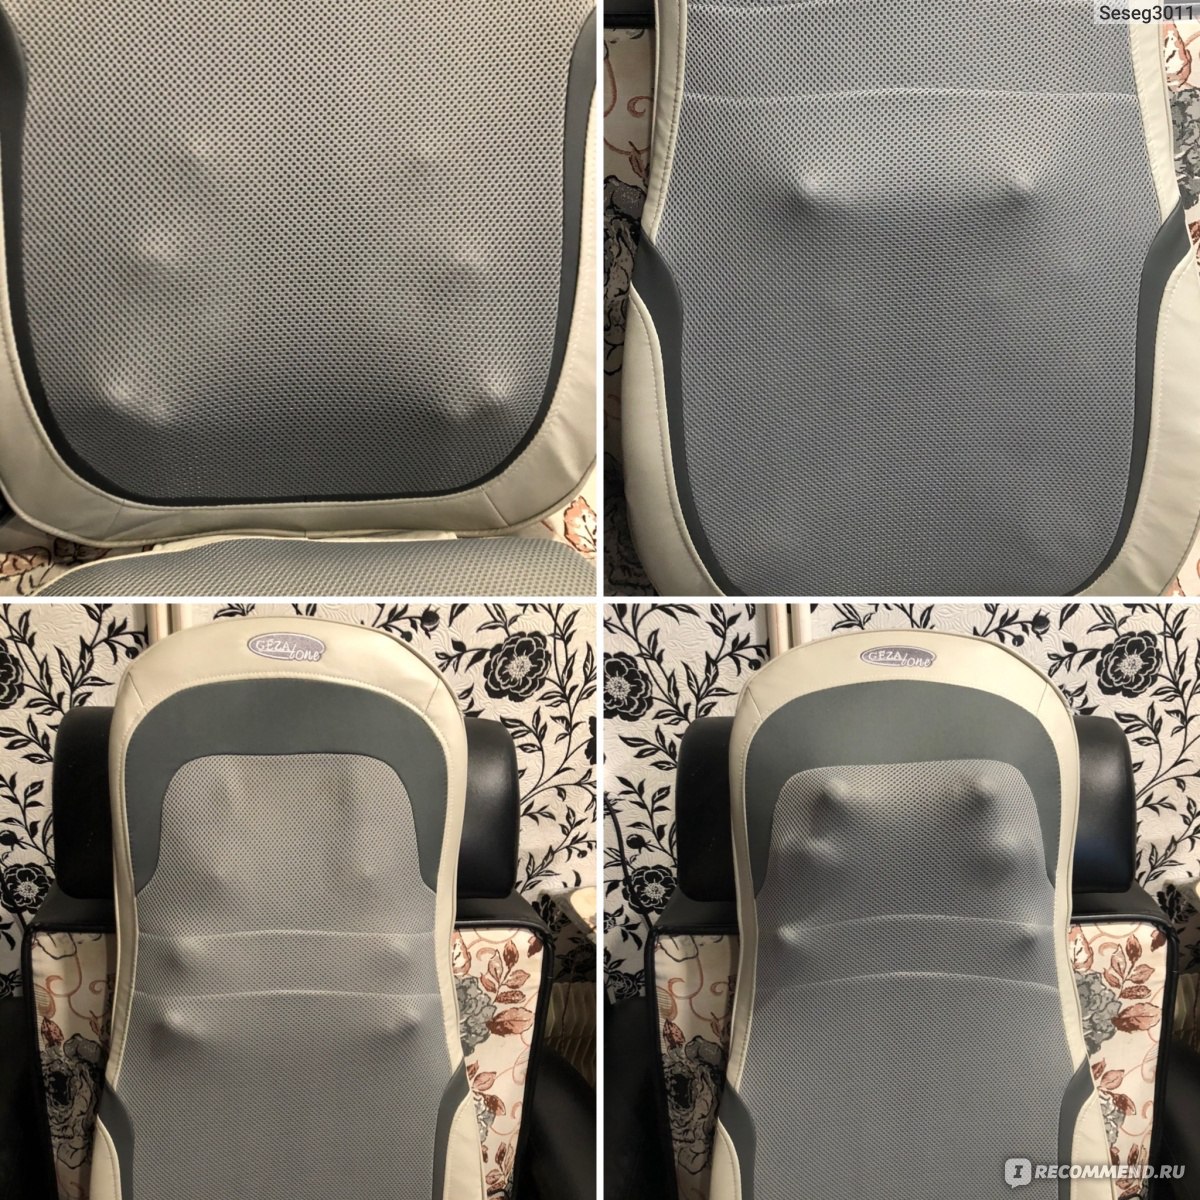 Массажная накидка на кресло с 10 режимами массажа amg 399se gezatone